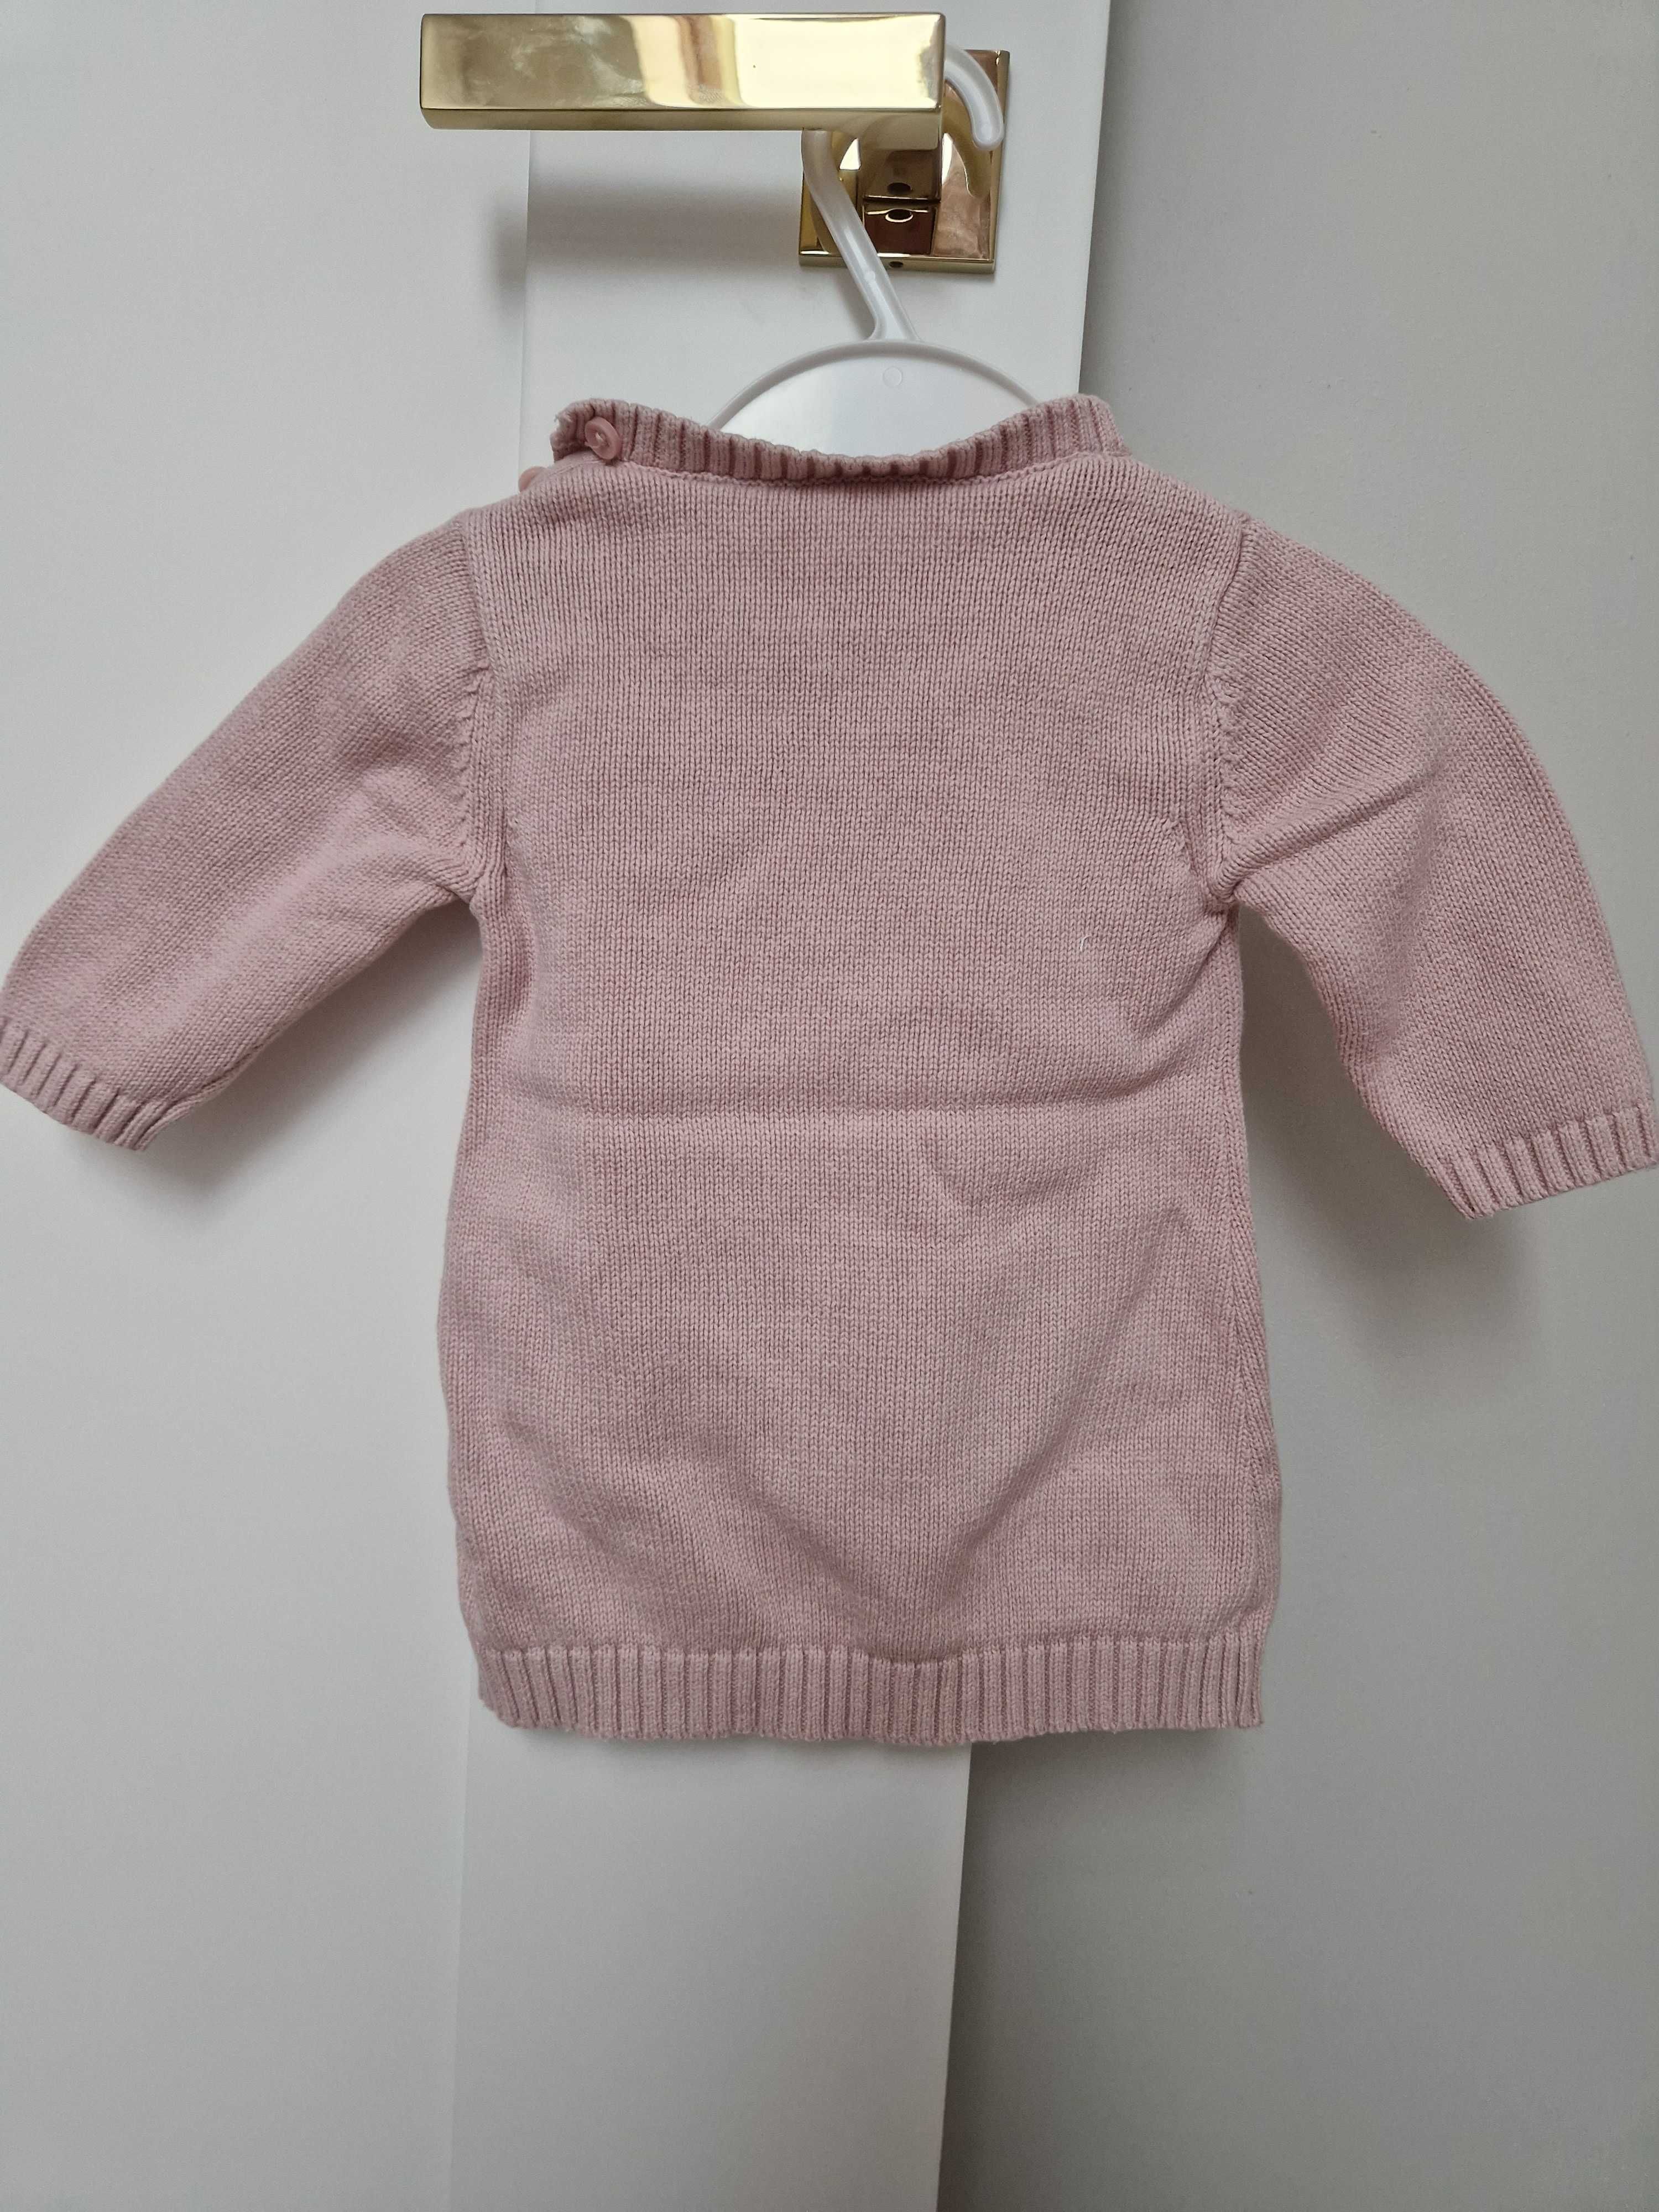 Sliczny rozowy sweterek, tunika M&S 62